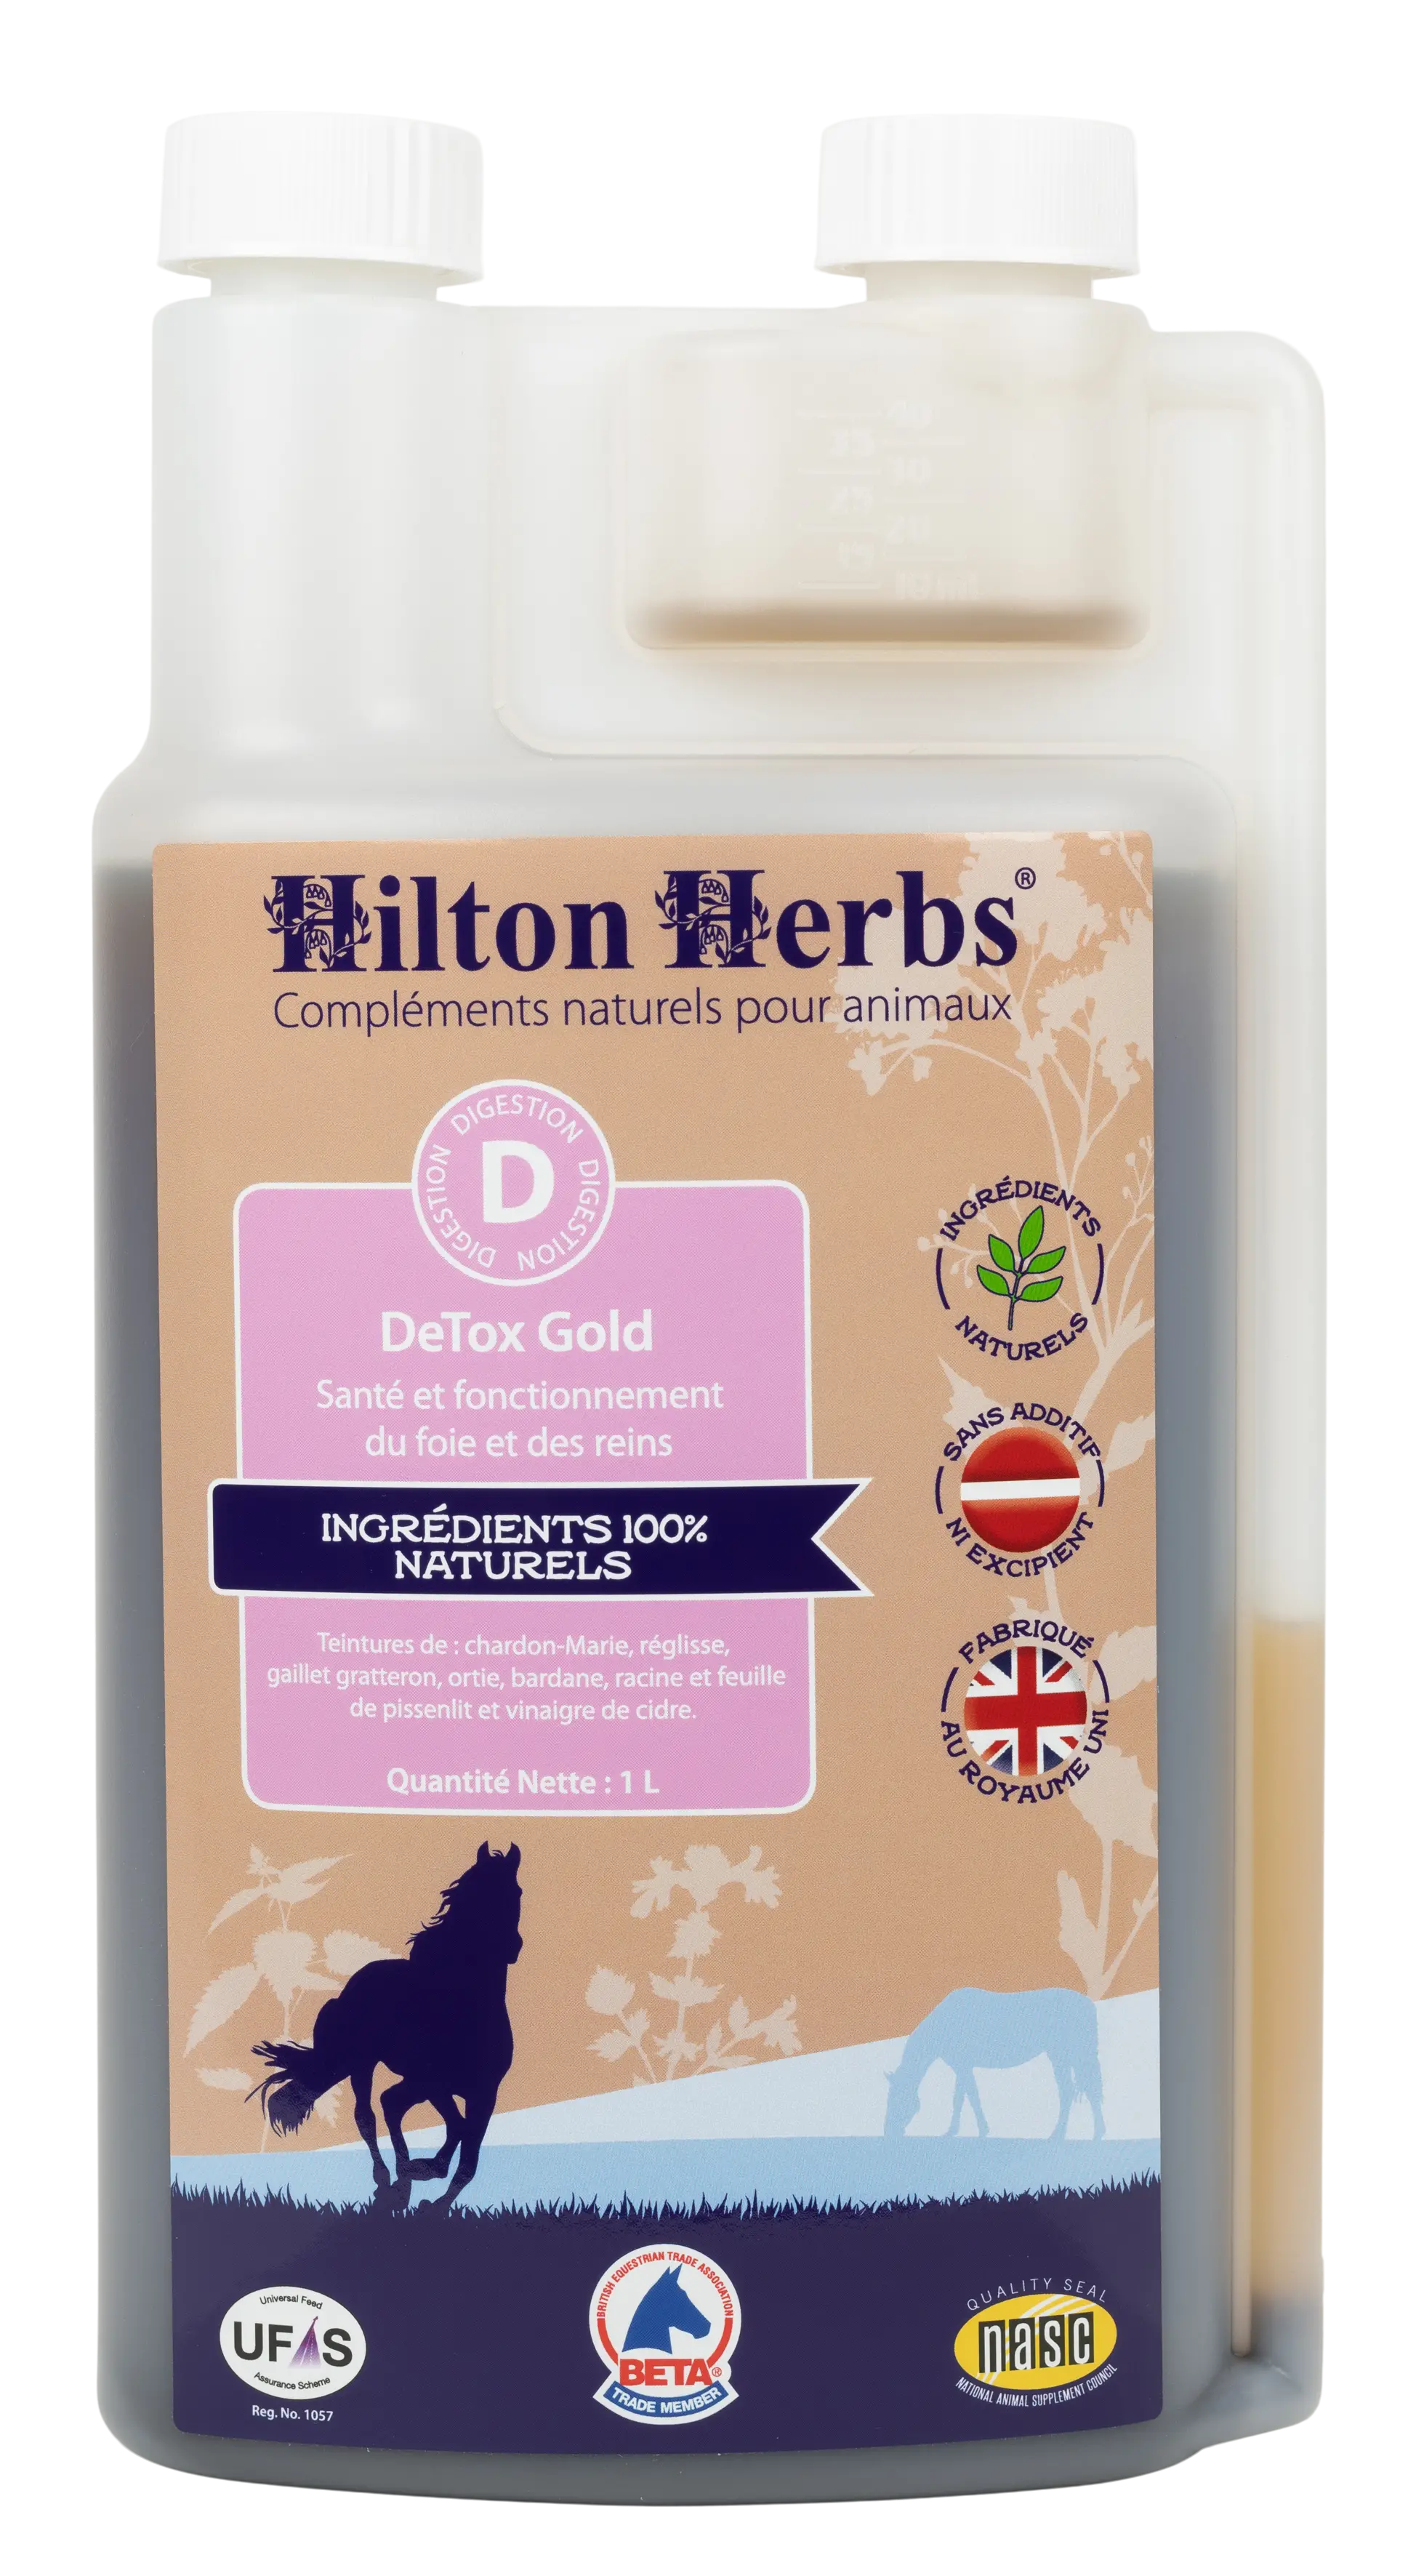 Detox Gold pour chevaux de Hilton Herbs